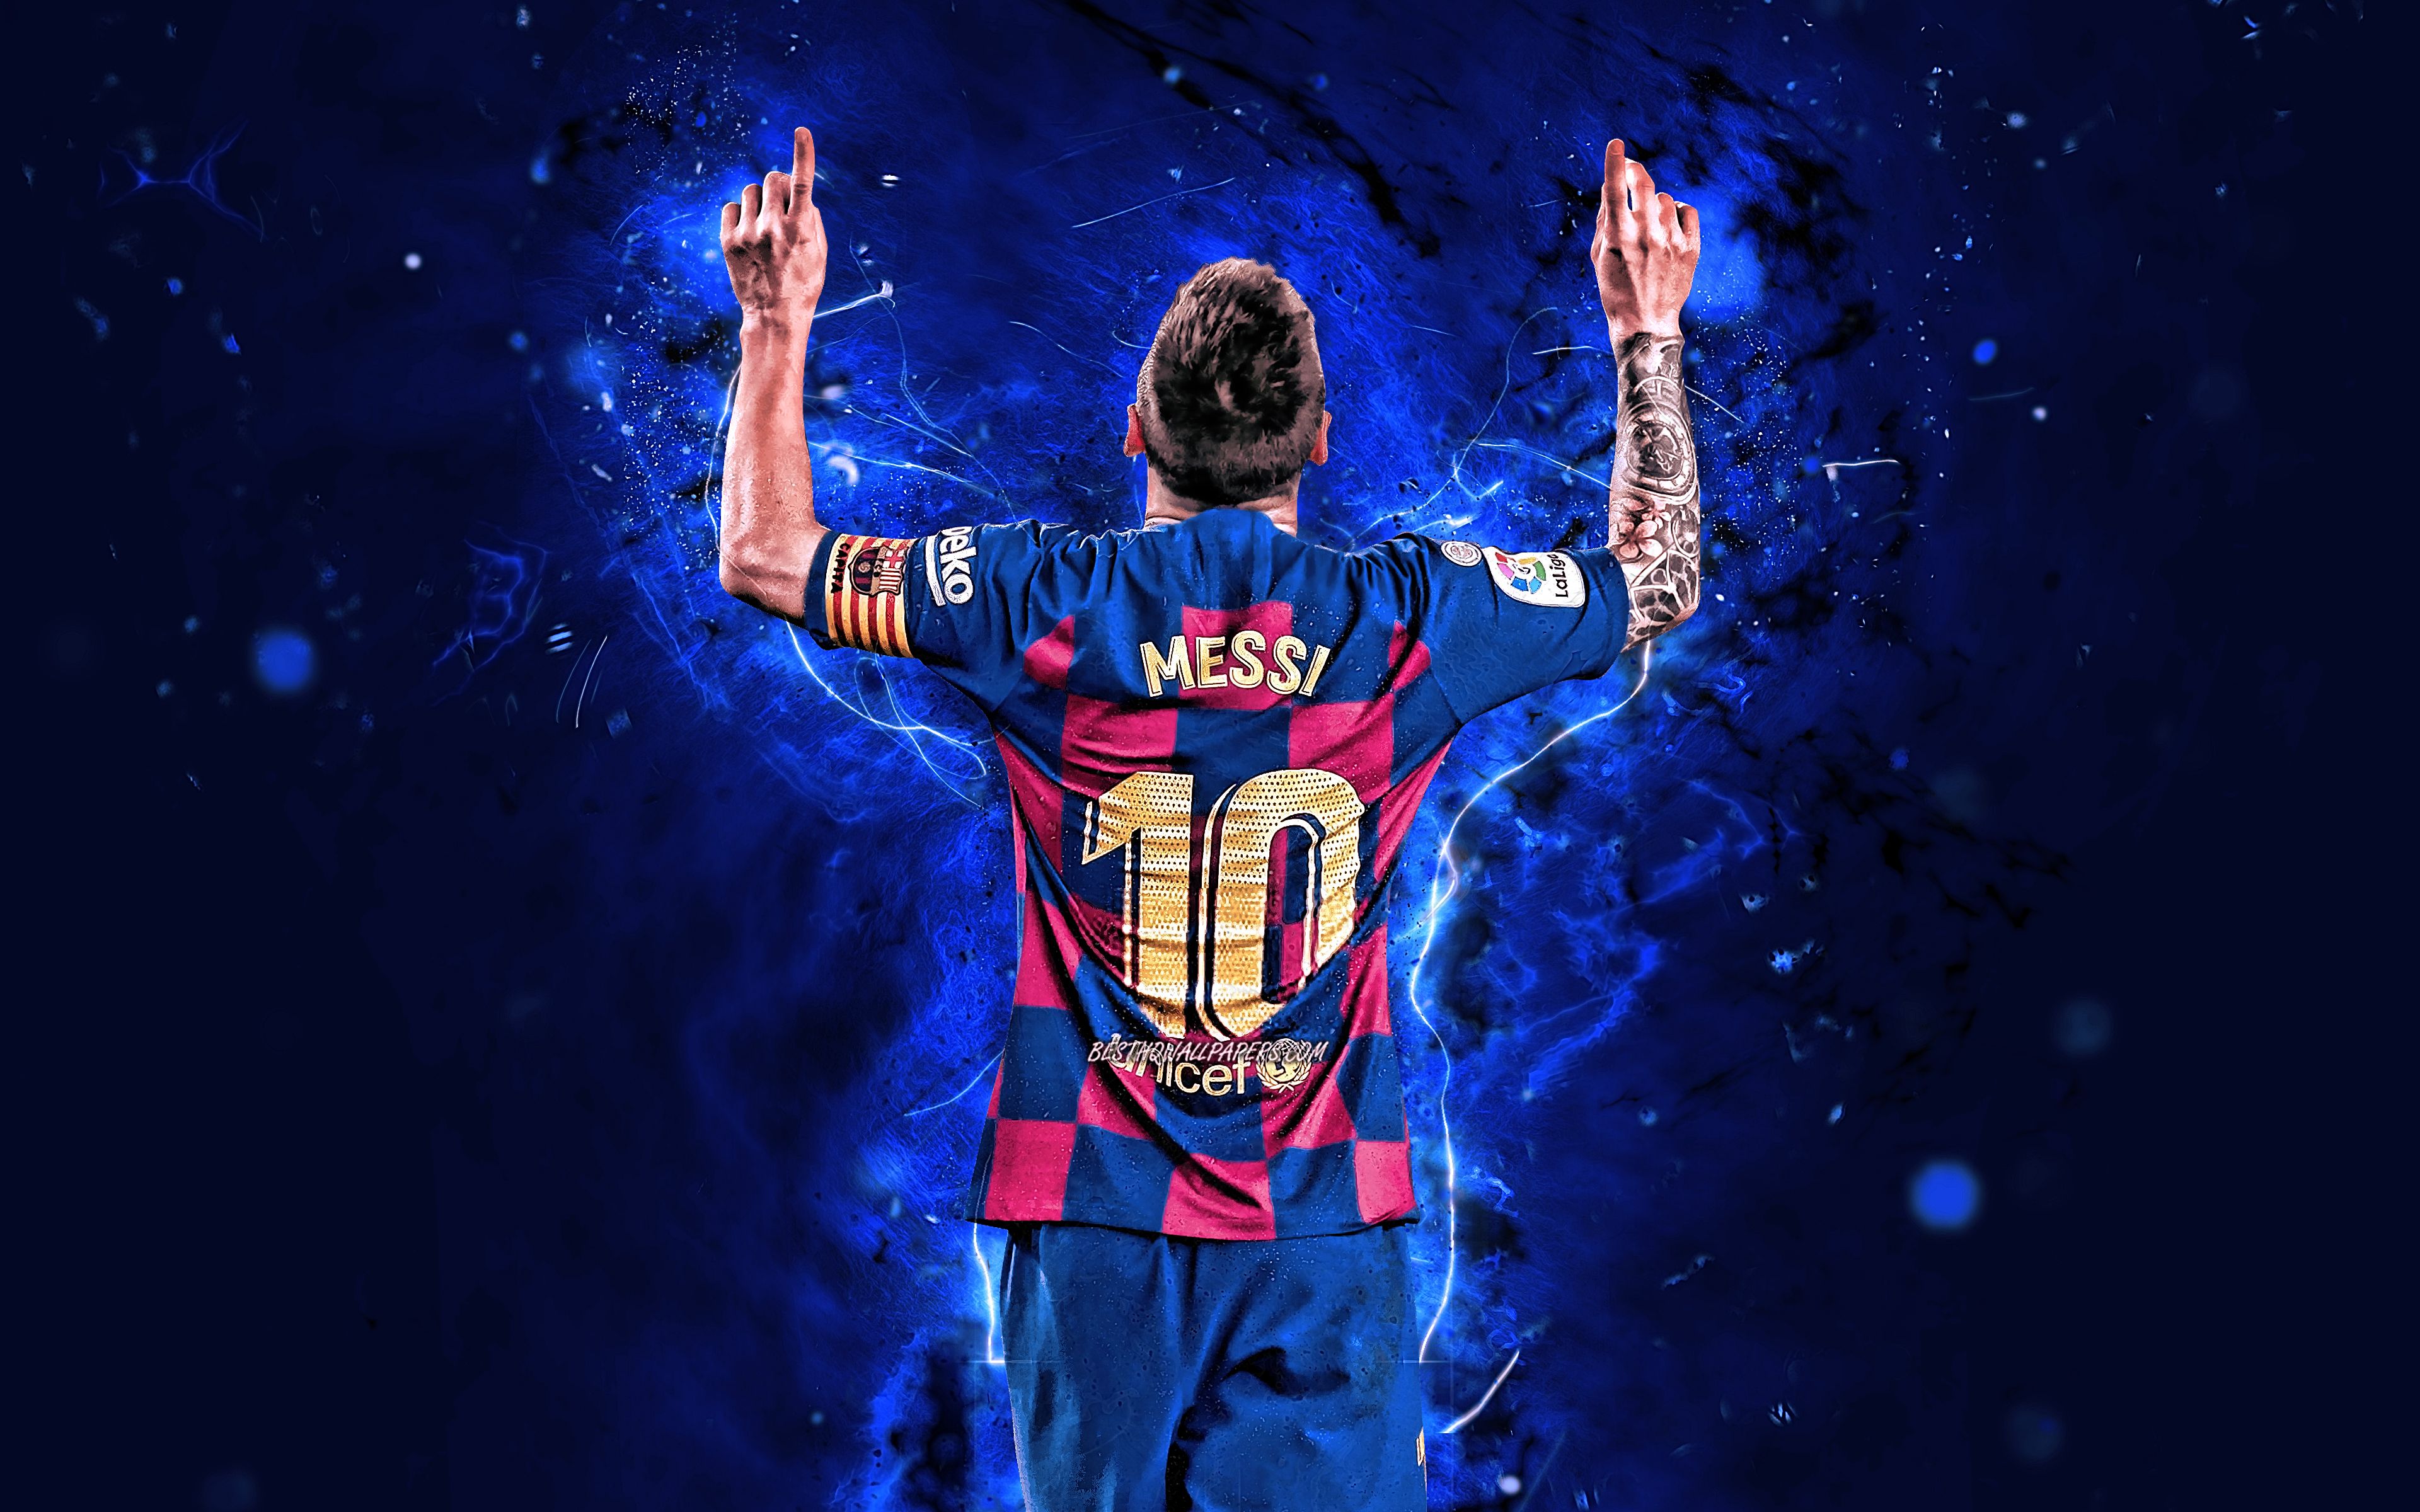 LEO MESSI WALLPAPER - món quà hoàn hảo dành cho các fan hâm mộ của ngôi sao bóng đá Lionel Messi. Bức tranh nền này sẽ khiến bạn có được trải nghiệm thật khác biệt bên cạnh ngôi sao bóng đá đình đám này!